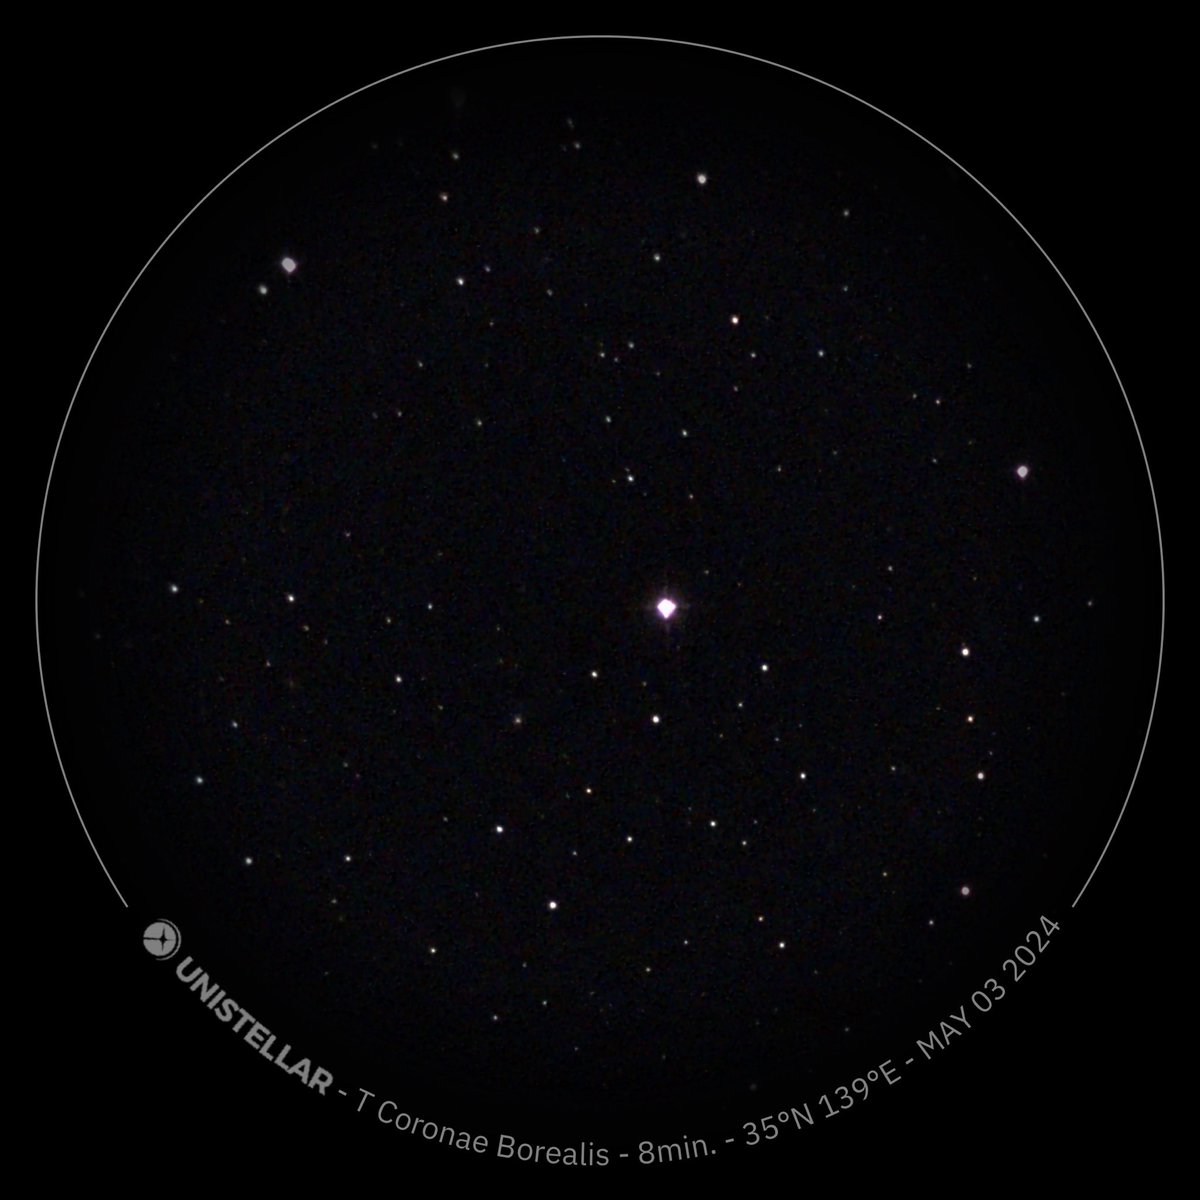 Blaze star / T CrB
May 3 23:55 JST
eVscope